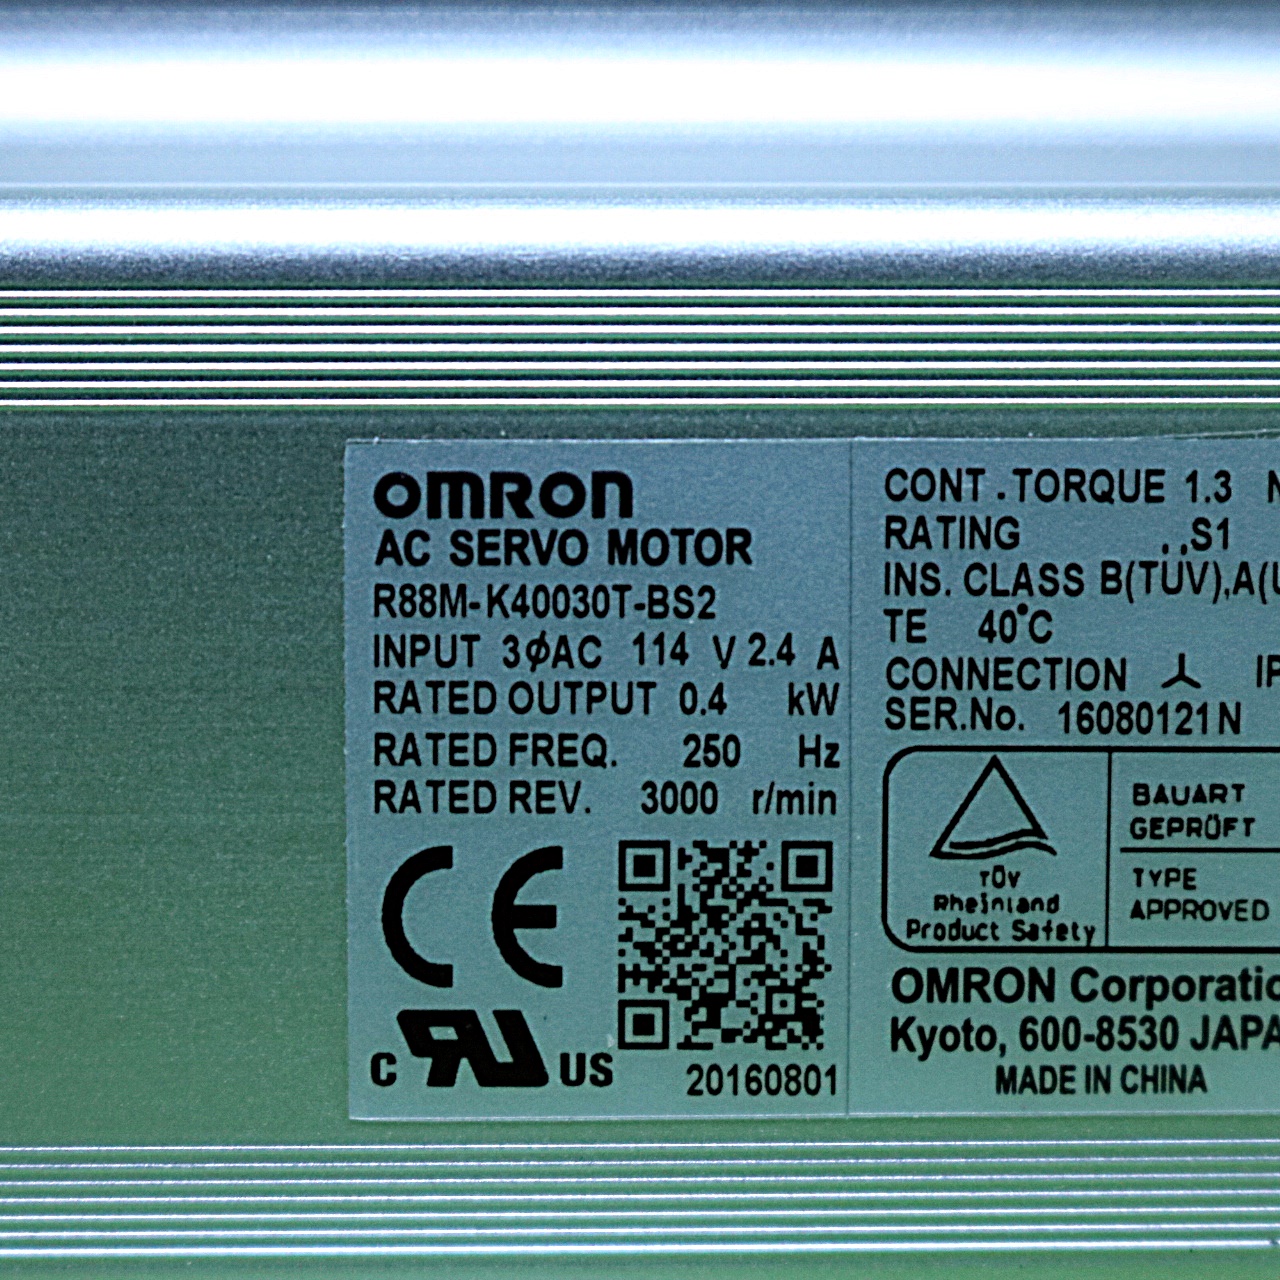 [미사용] R88M-K40030T-BS2 오므론 (OMRON) 서보 모터 AC서보모터 G5시리즈[실린더 타입]